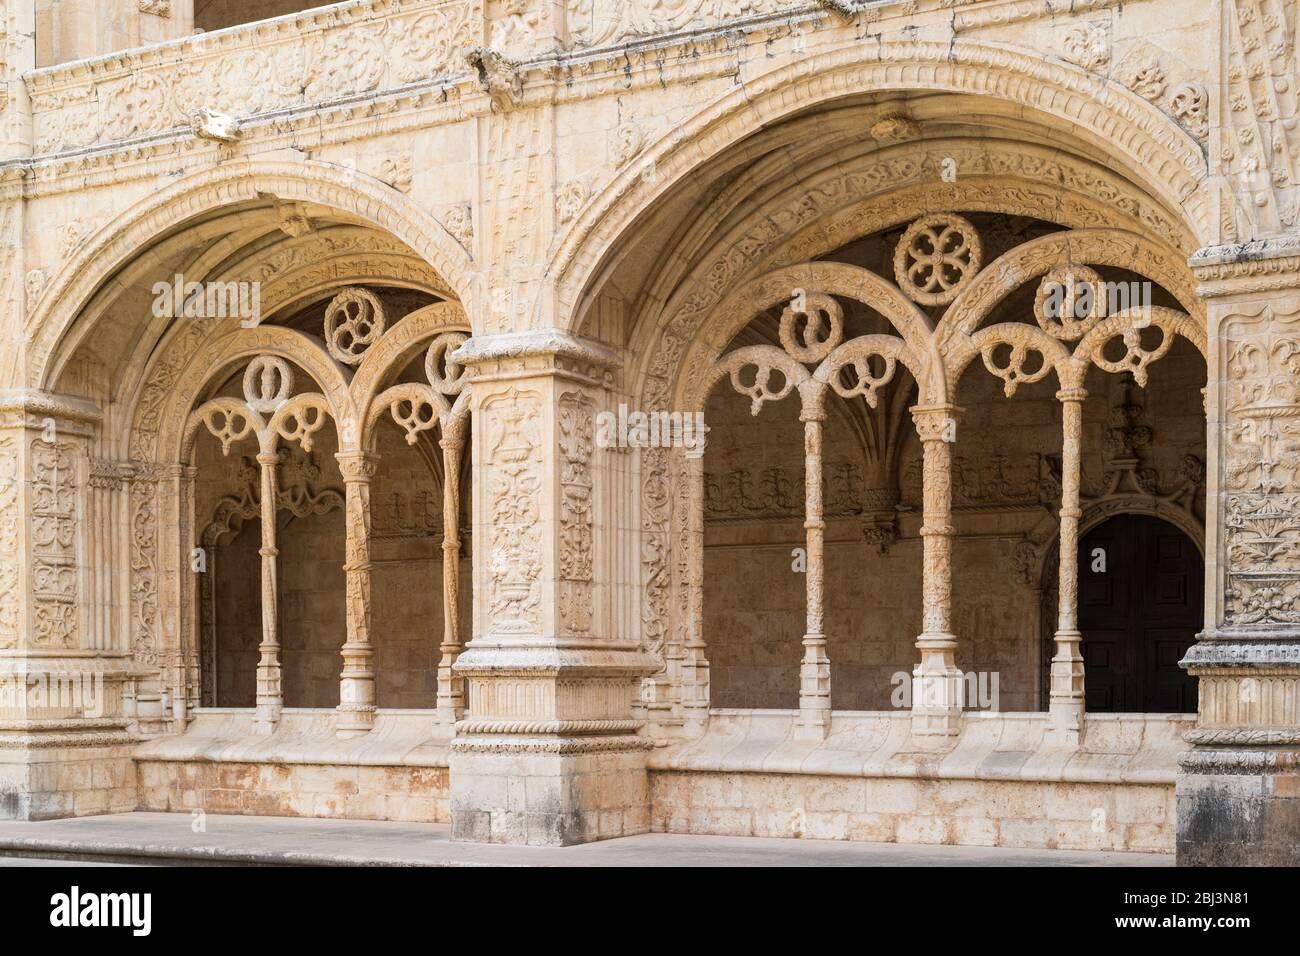 Pilares de piedra arcos y claustros del famoso Monasterio de Jeronimos - Mosteiro dos Jeronimos en Lisboa, Portugal Foto de stock